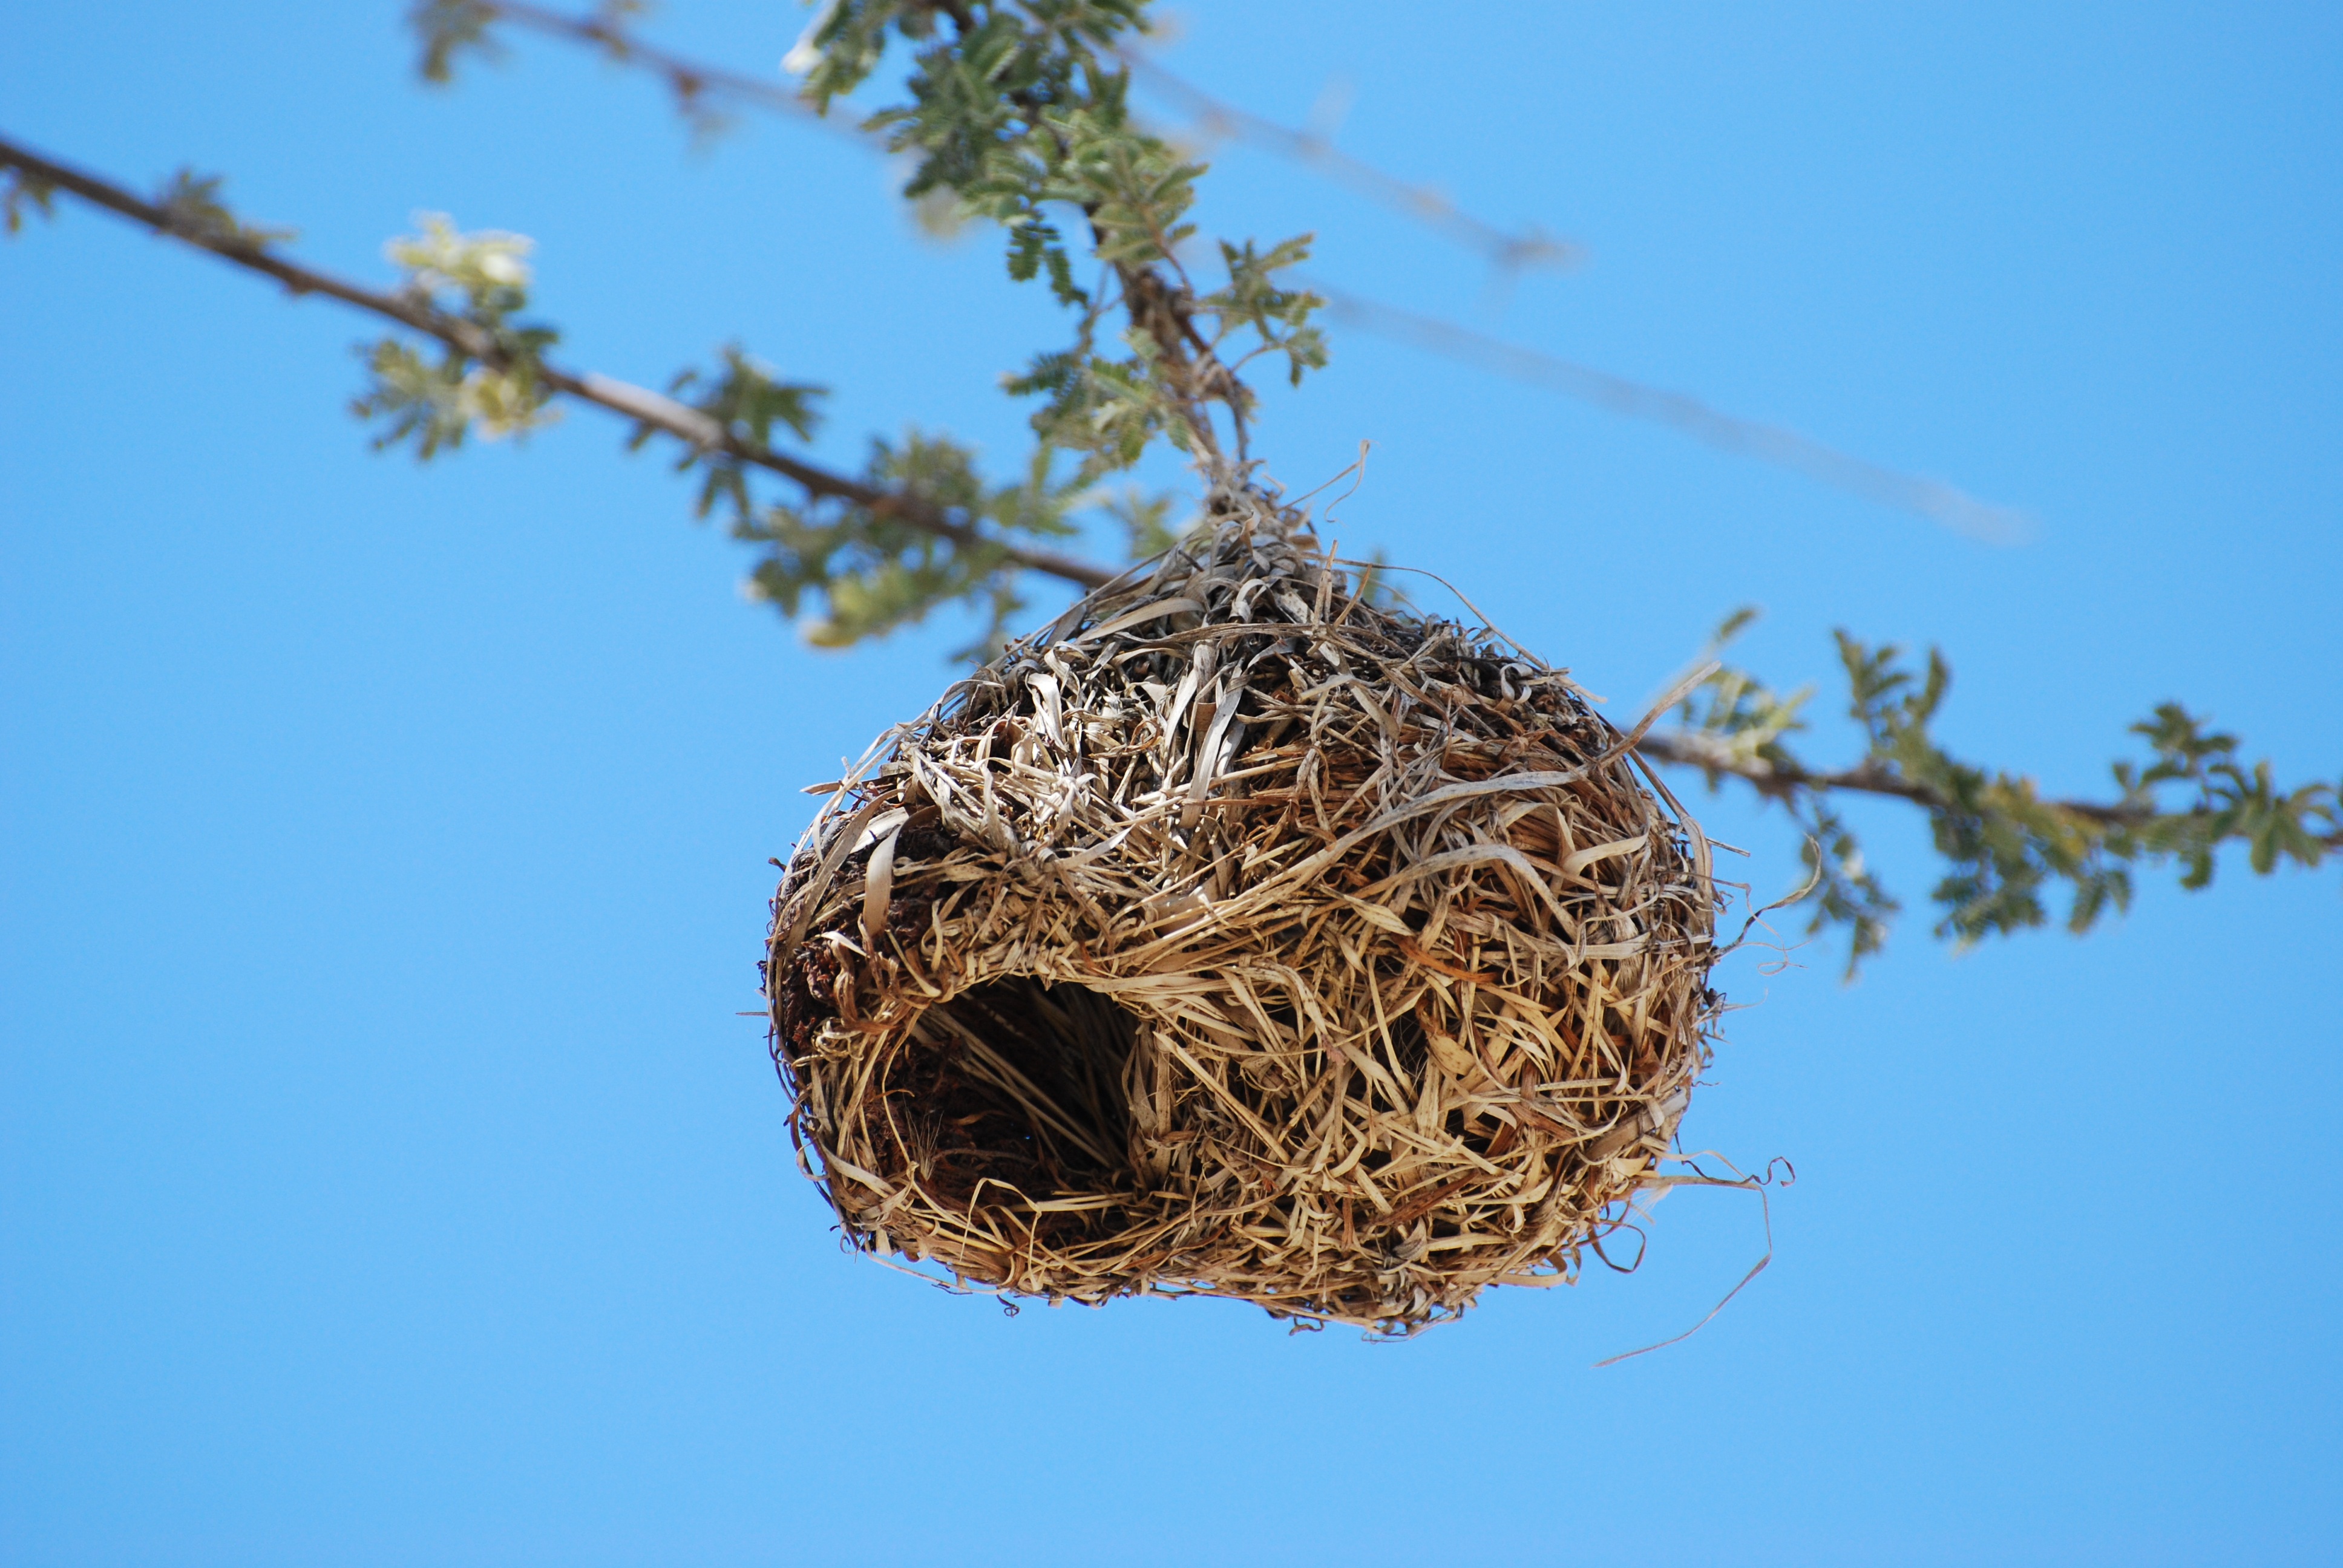 鸟 羽毛 巢 - Pixabay上的免费照片 - Pixabay